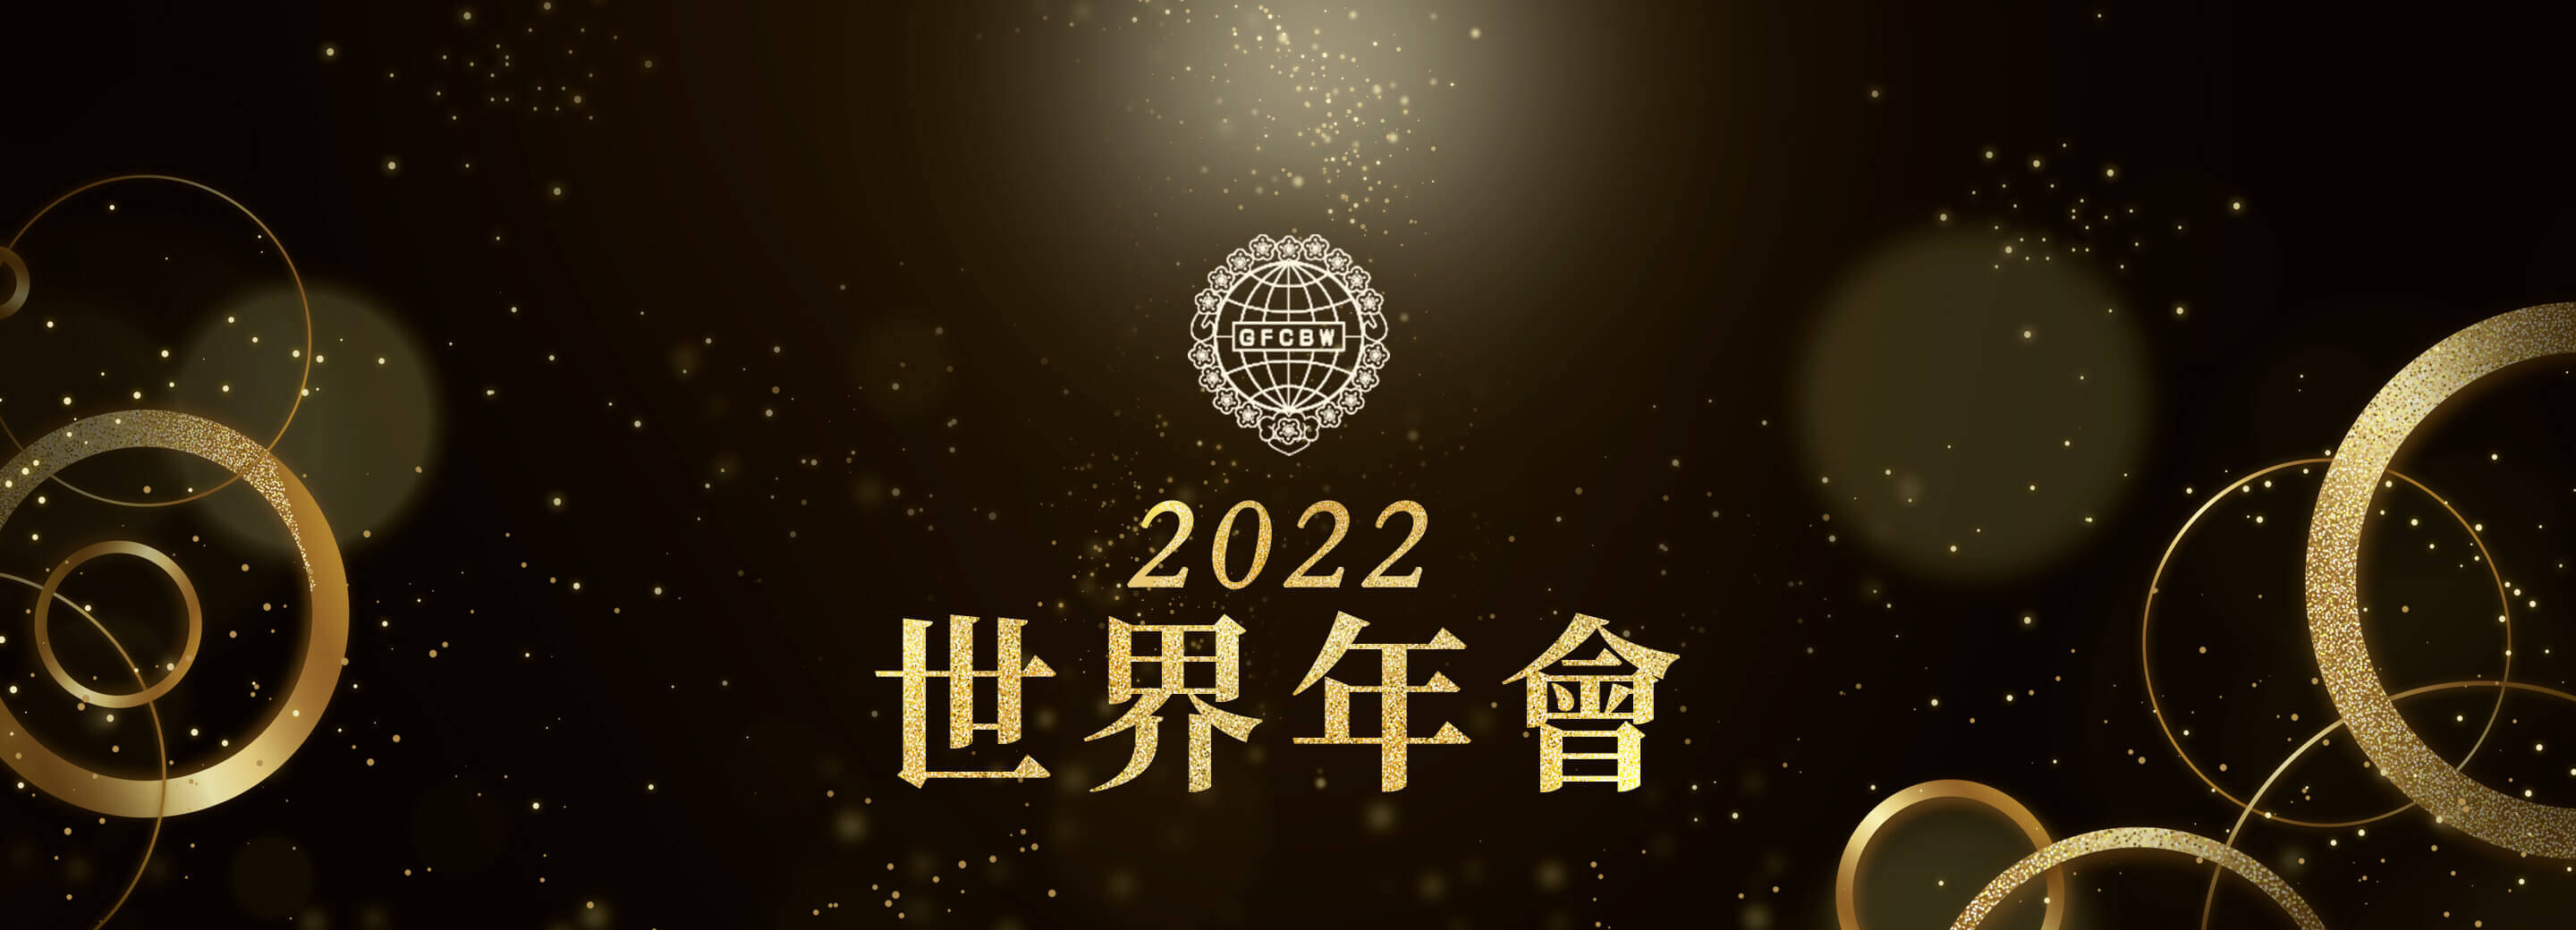 世界華人工商婦女企管協會 2022 世界年會